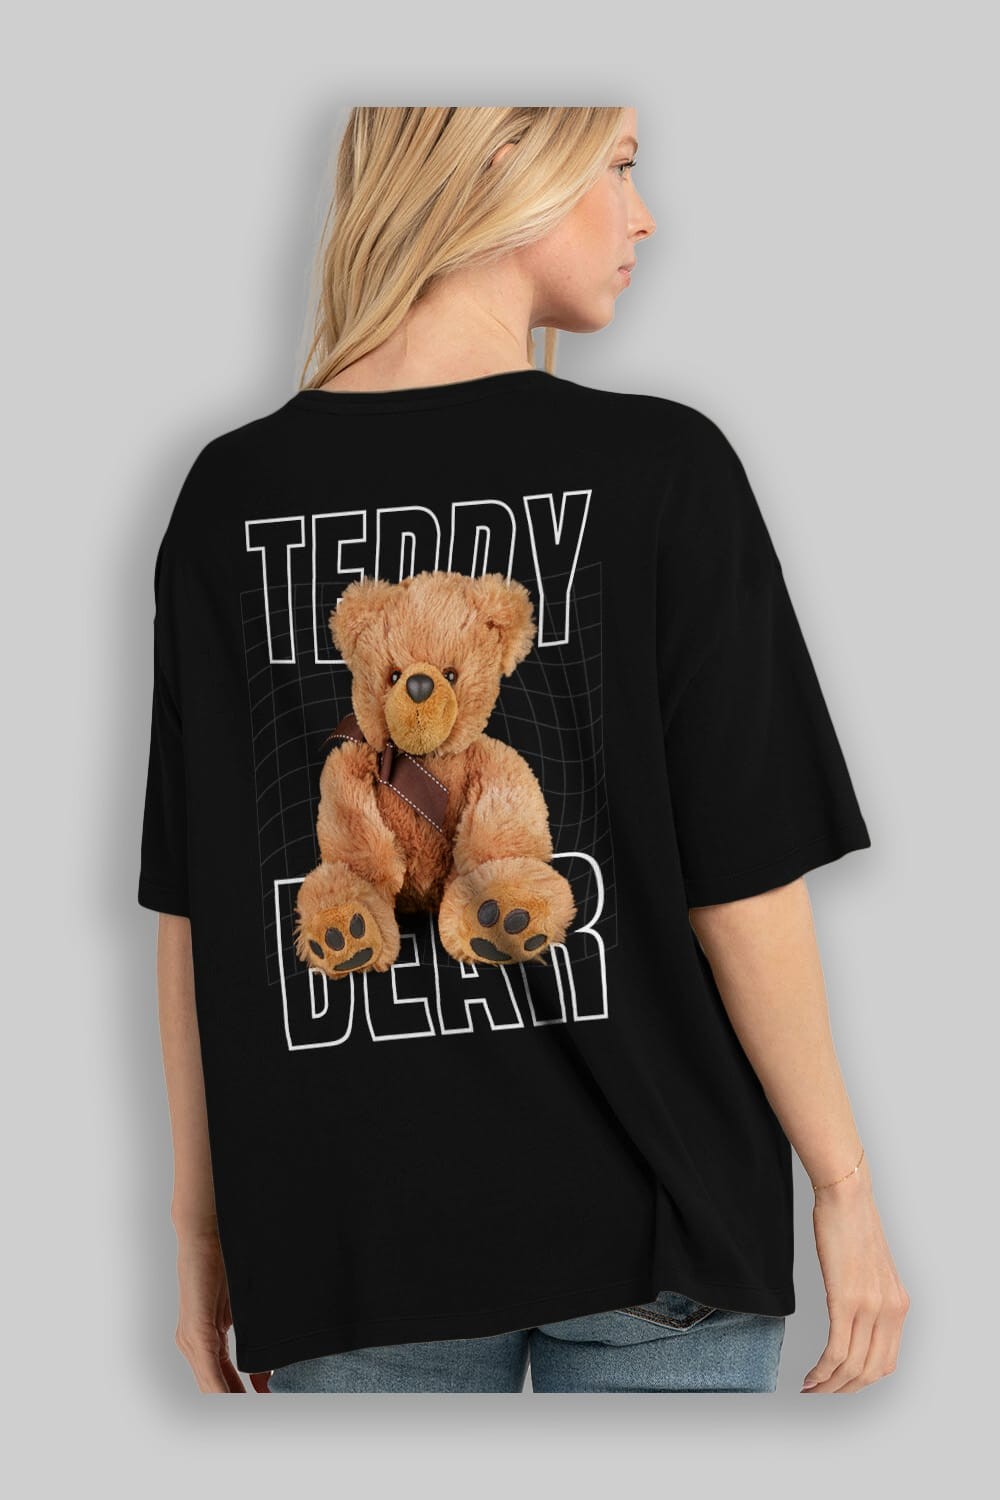 Teddy Bear Yazılı Arka Baskılı Oversize t-shirt Erkek Kadın Unisex